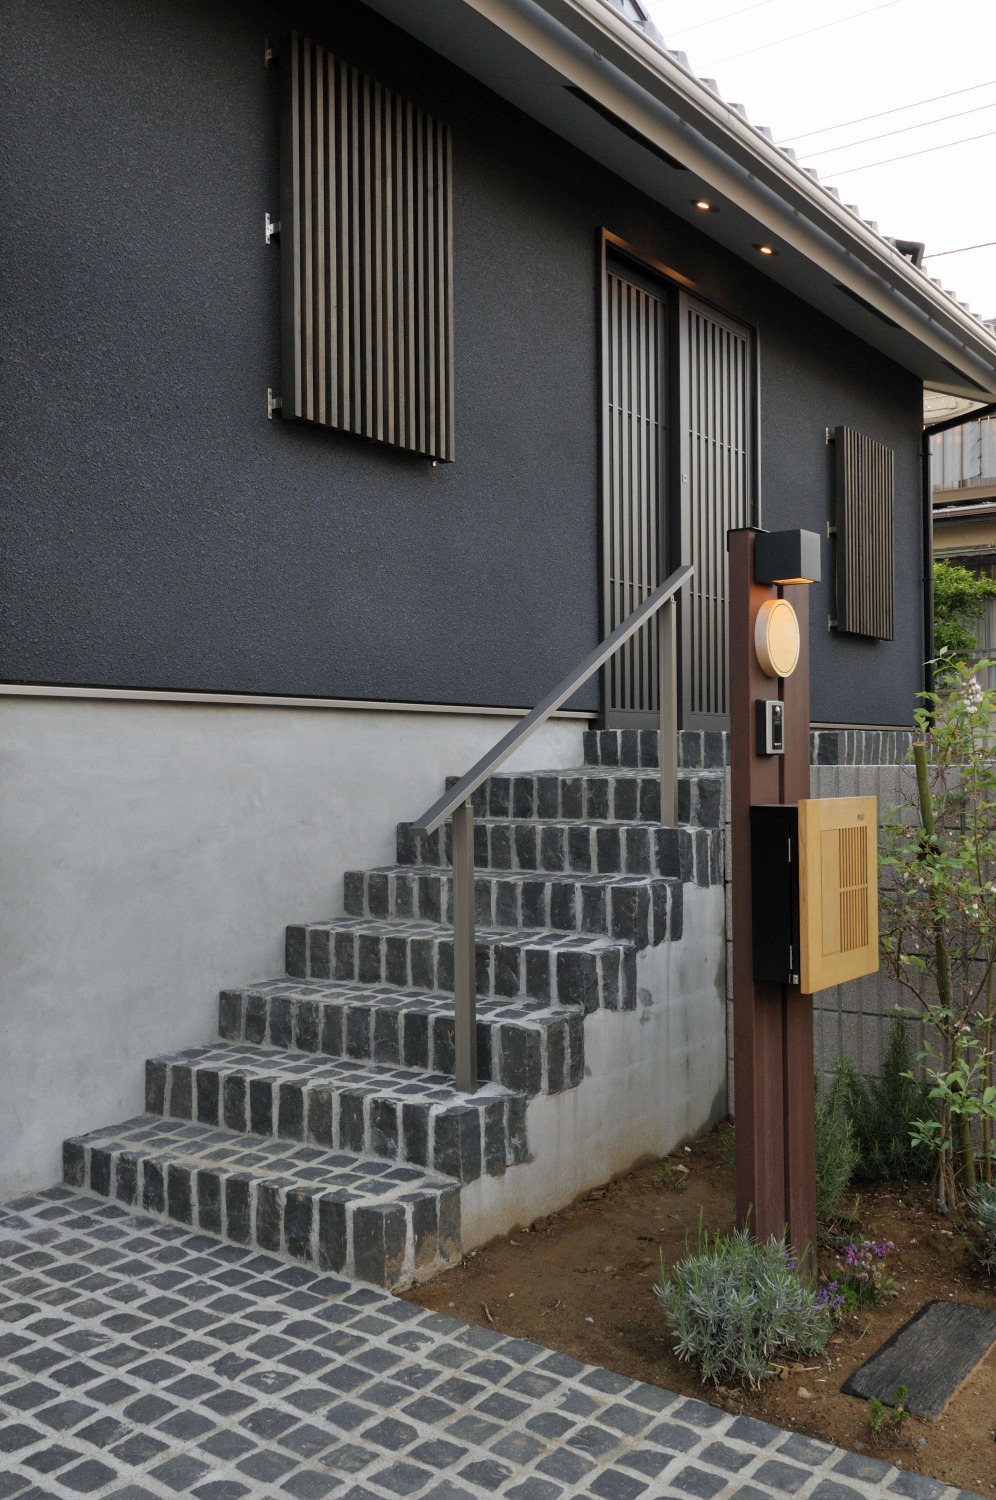 木格子と石畳が和の雰囲気を演出する玄関階段。の画像